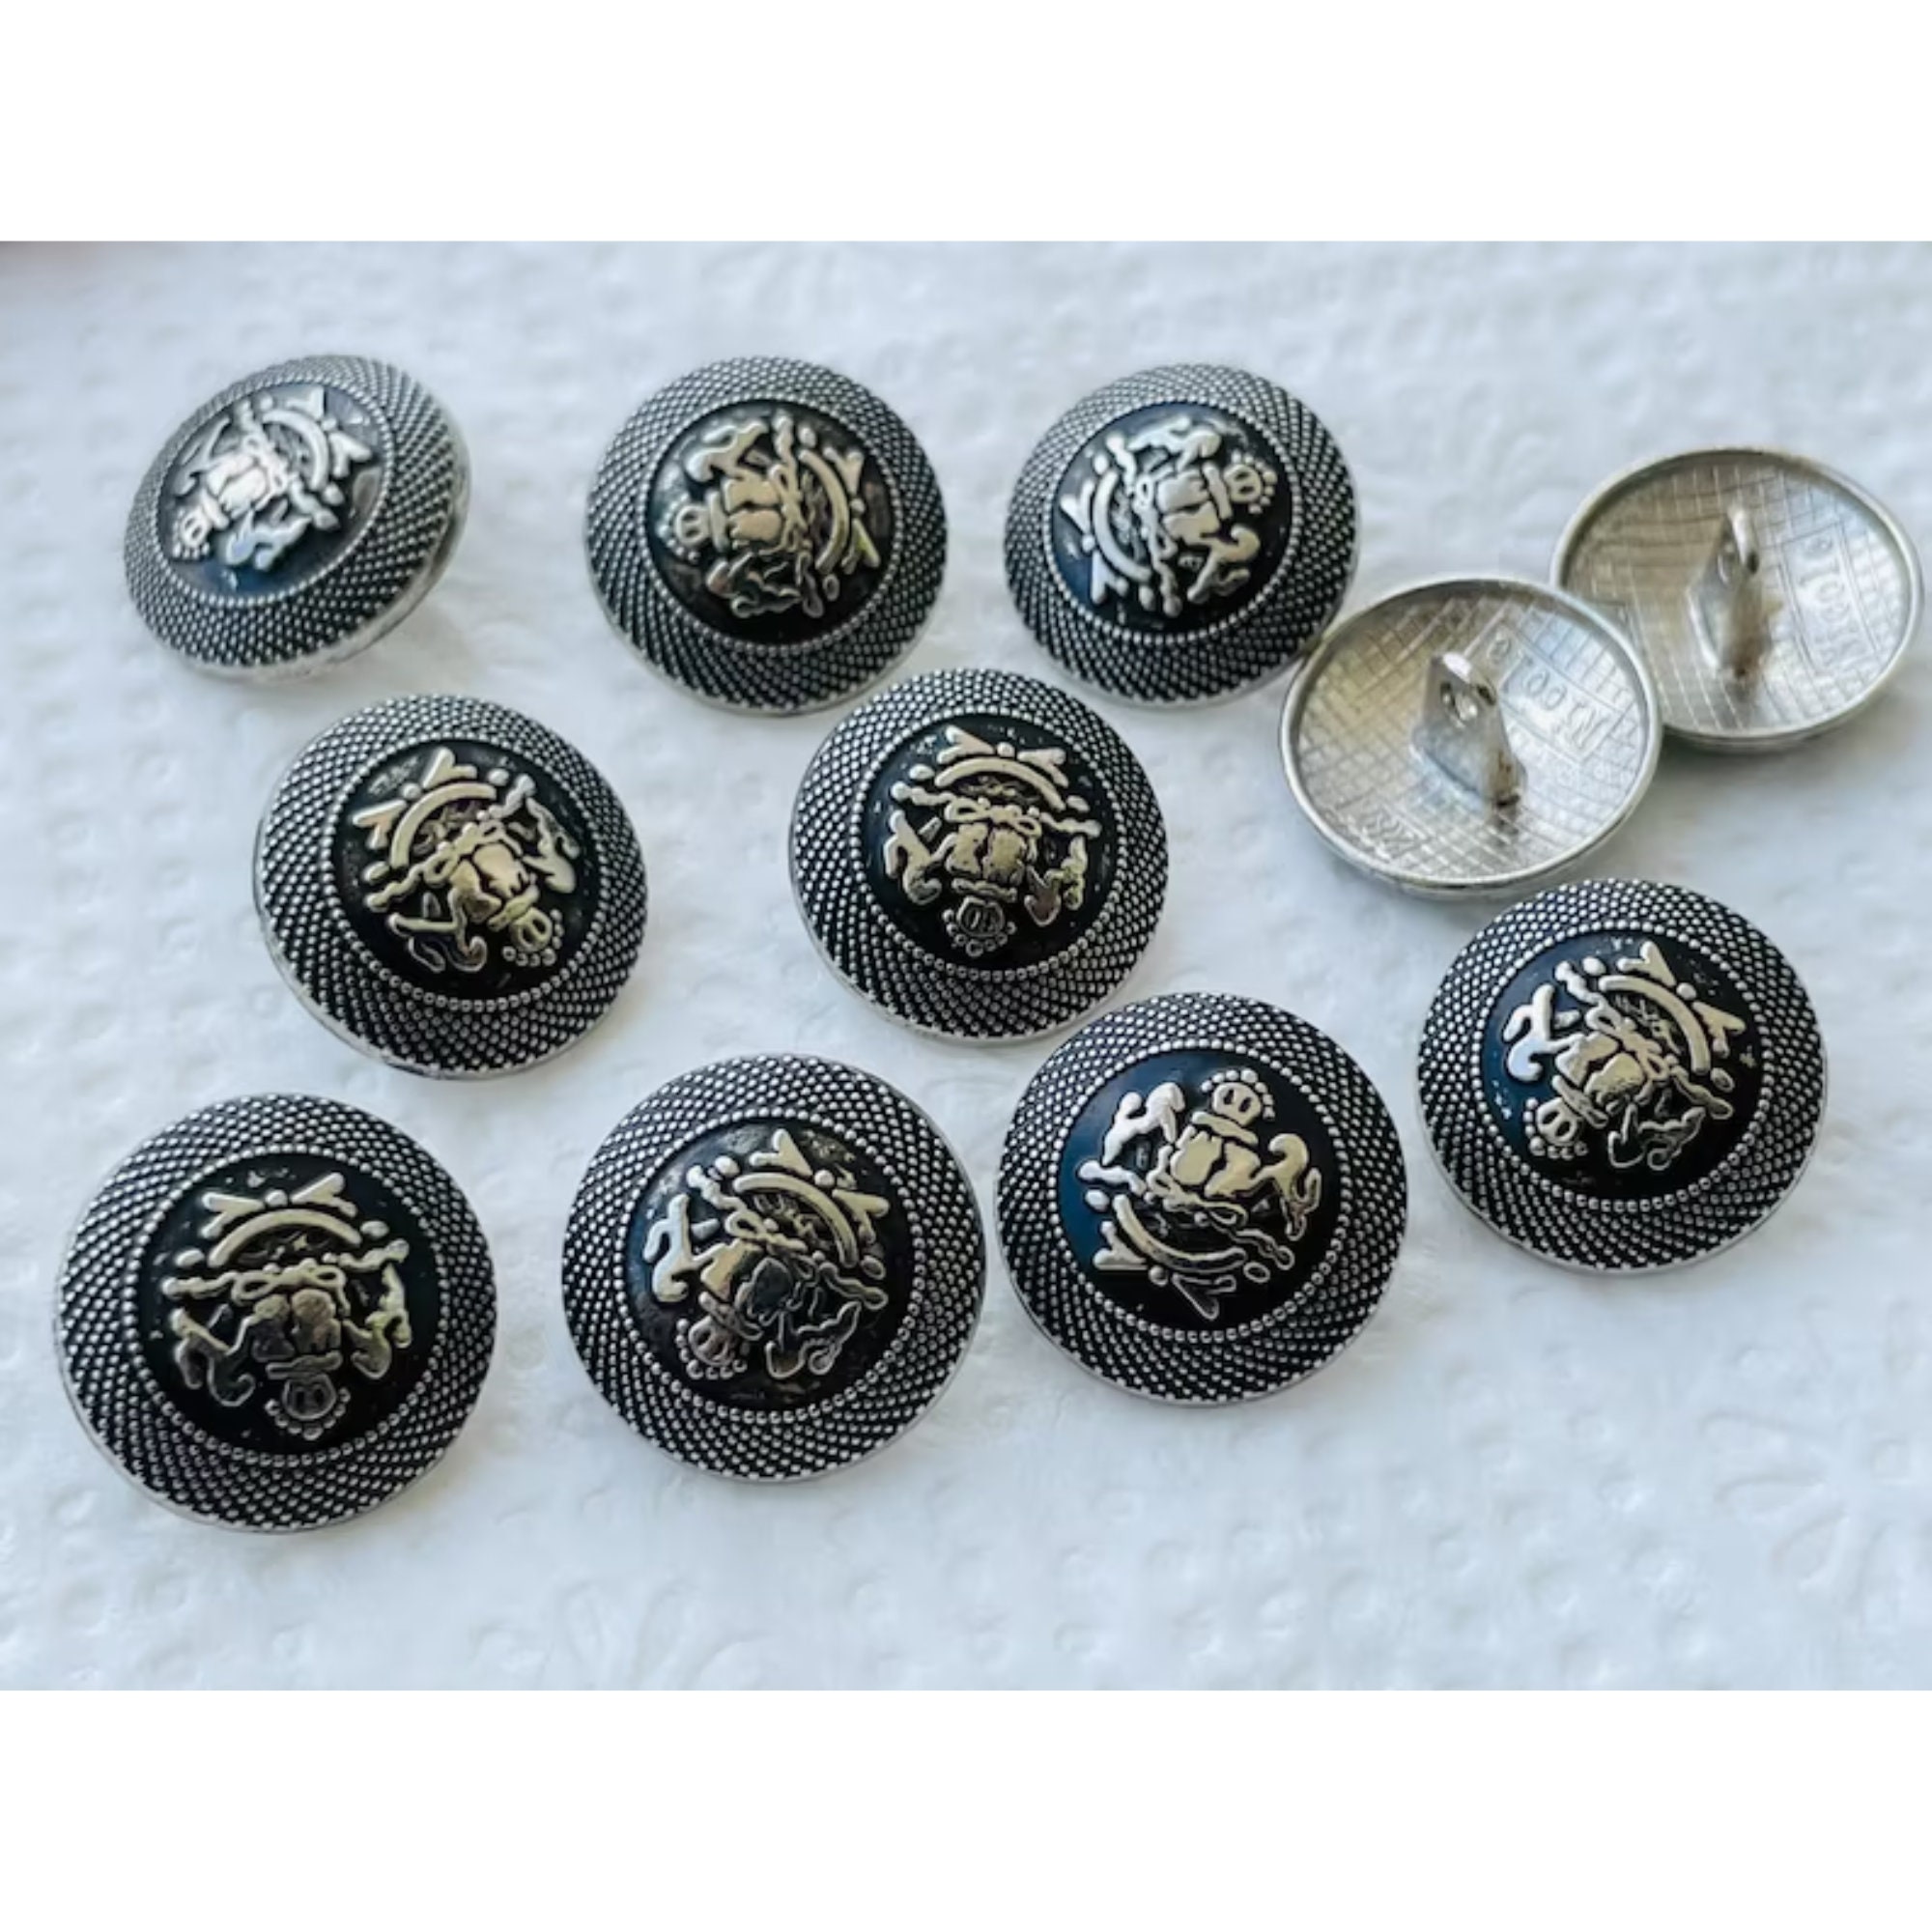 COHEALI 30pcs Metal Buttons Metal Shirt Buttons Snap Buttons Metal Sewing  Buttons Metal Suit Buttons Metal Blazer Buttons for Sewing Pant Buttons to